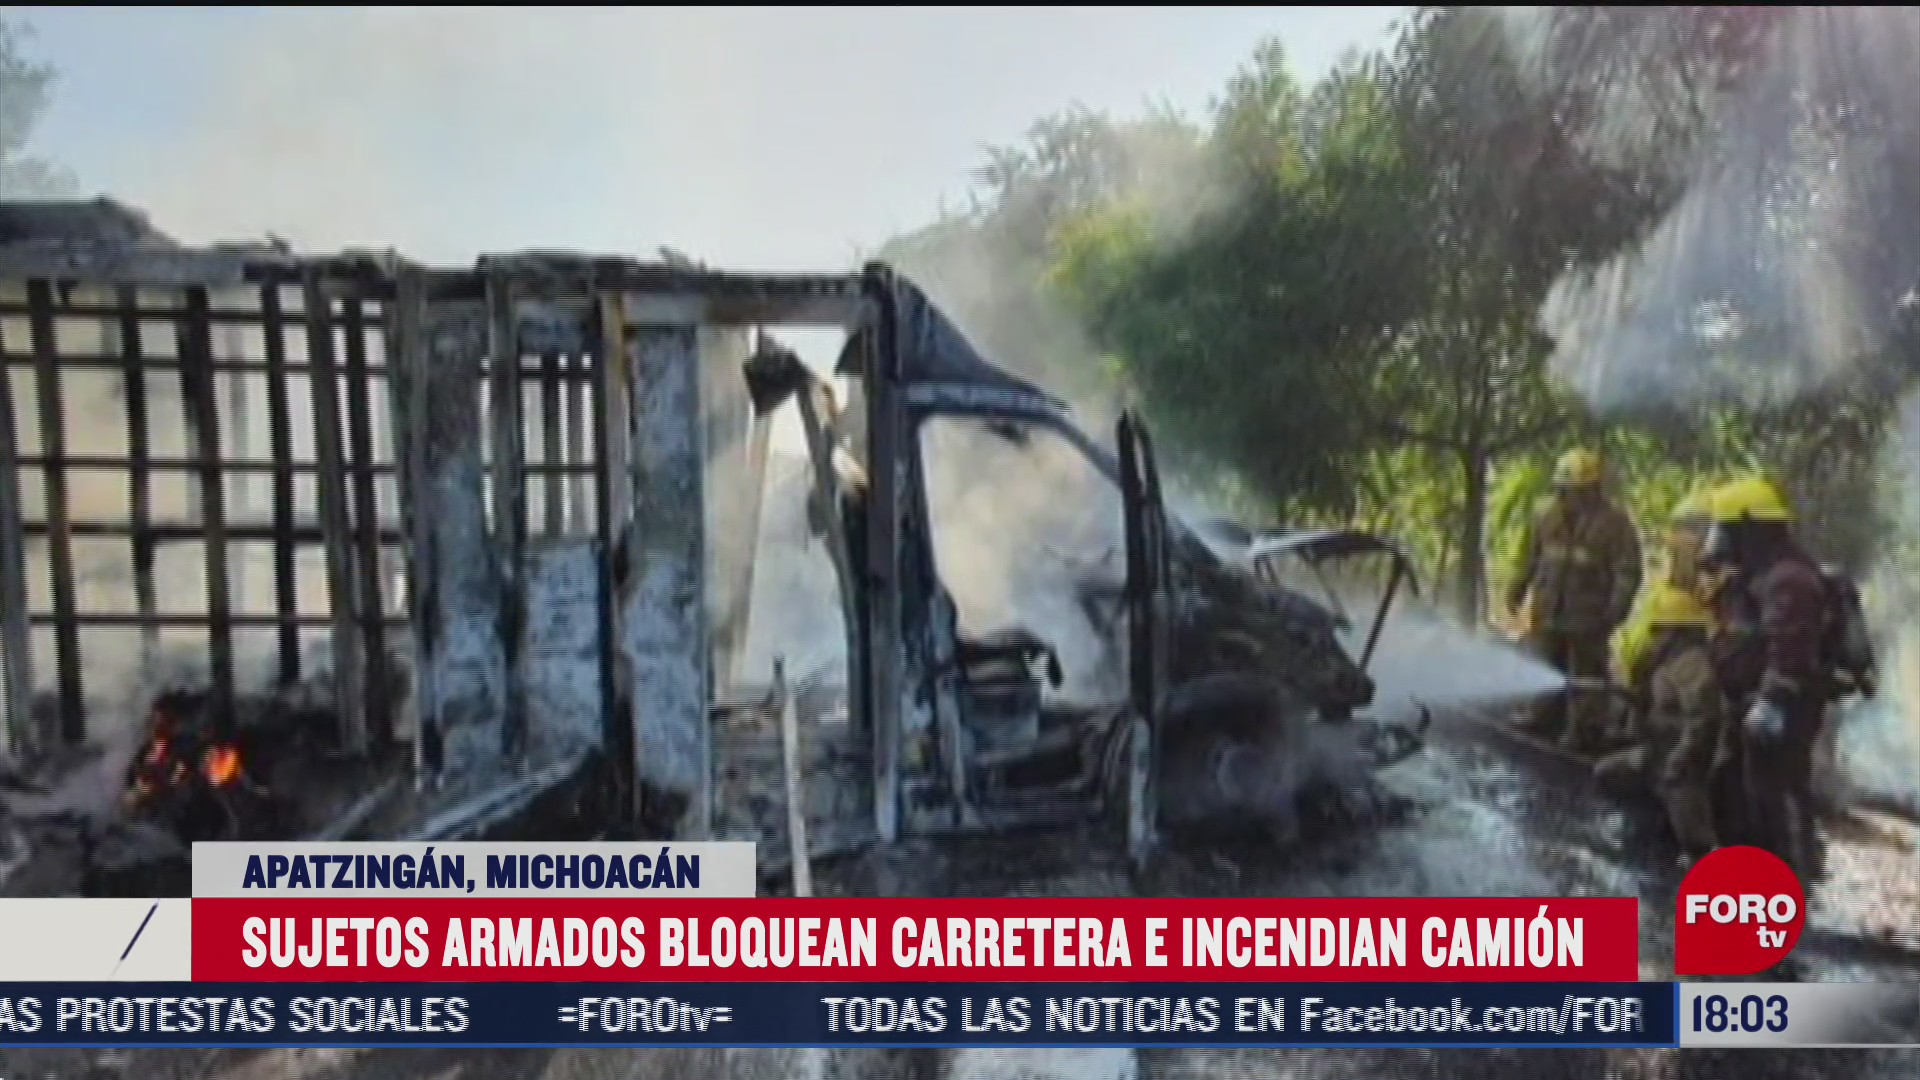 hombres armados bloquean carretera e incendian camion en michoacan